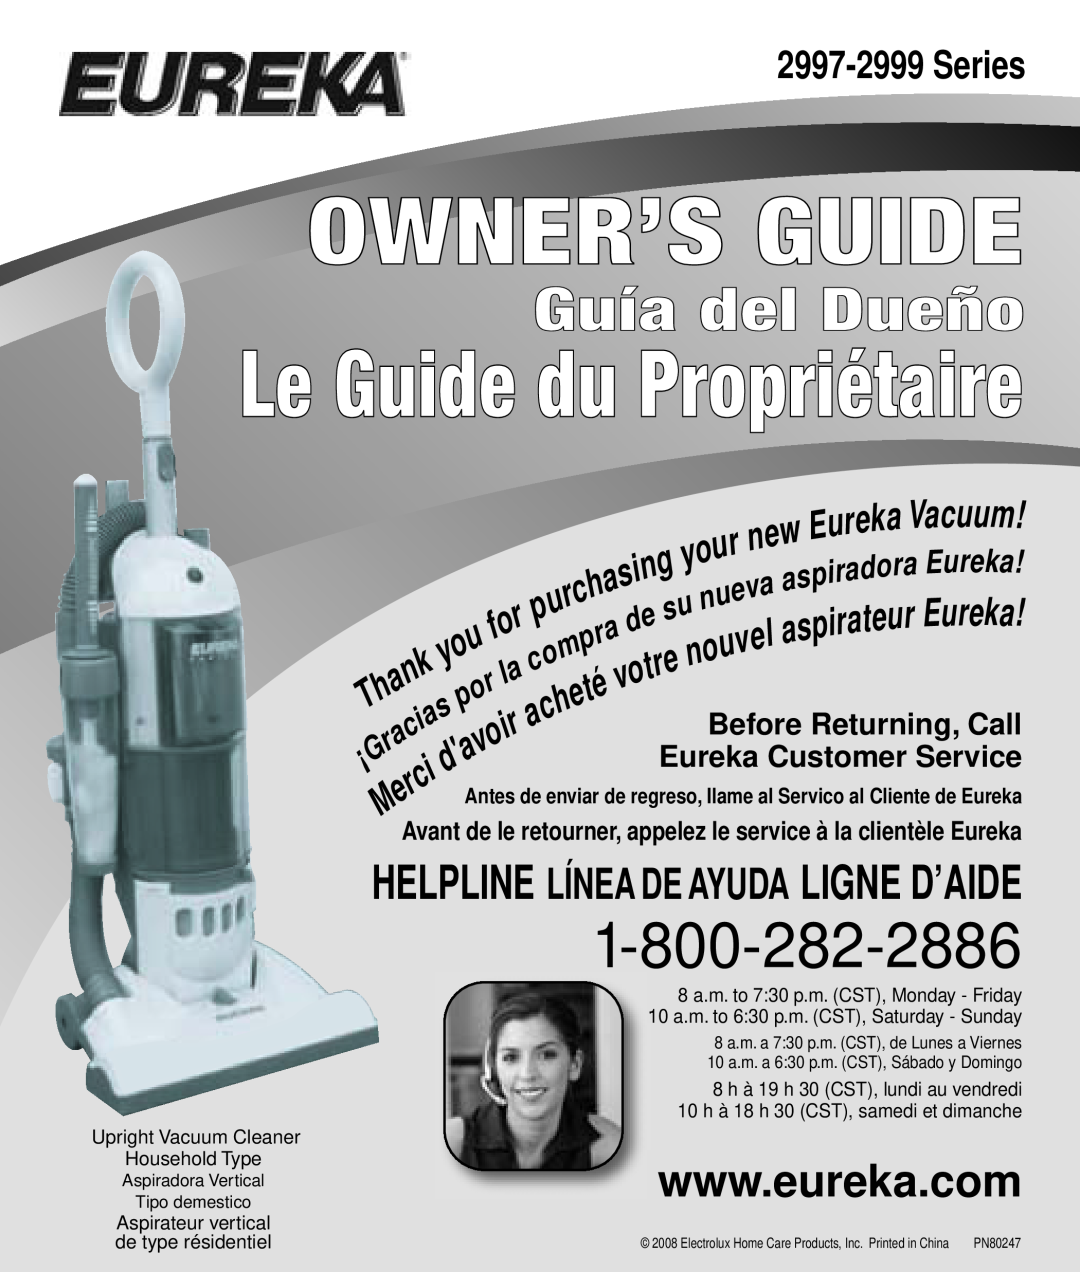 Eureka 2997-2999 Series manual Owner’S Guide, Le Guide du Propriétaire, Guía del Dueño 